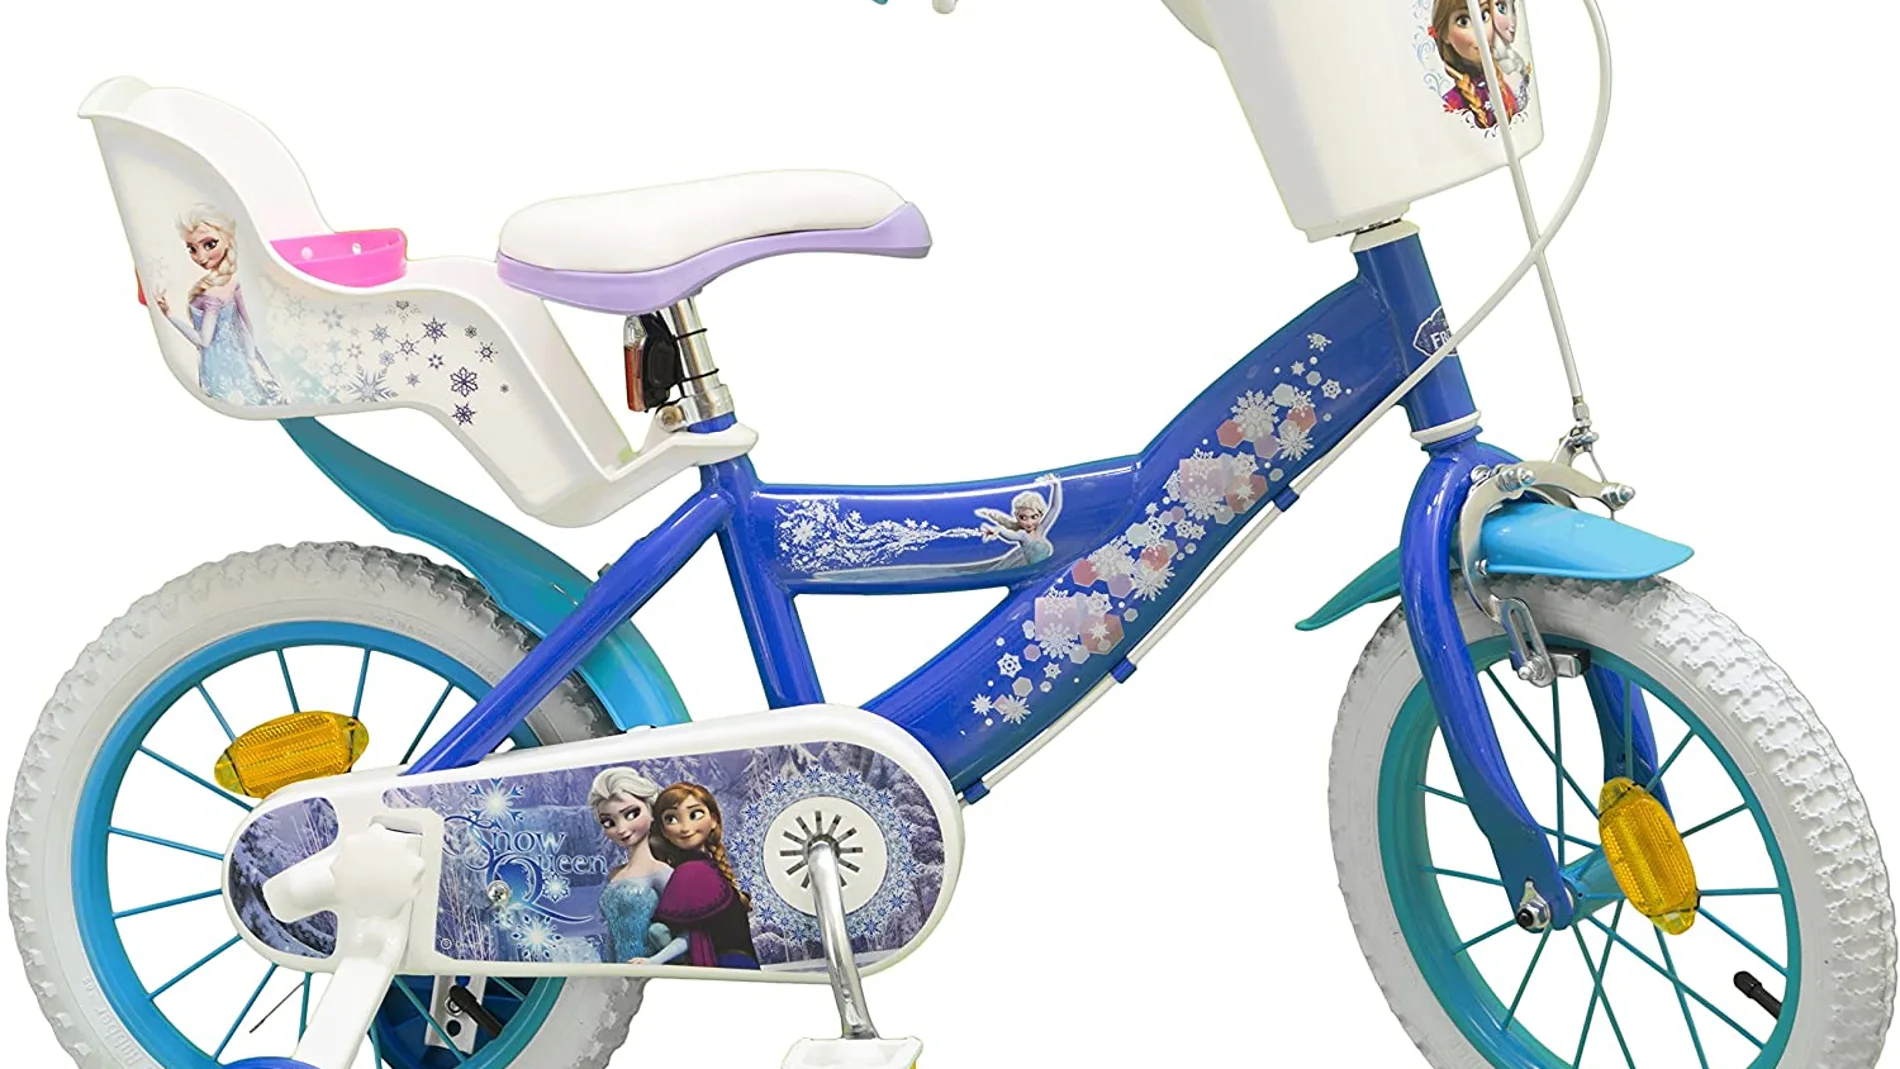 Bicicletas para Niños e Infantiles